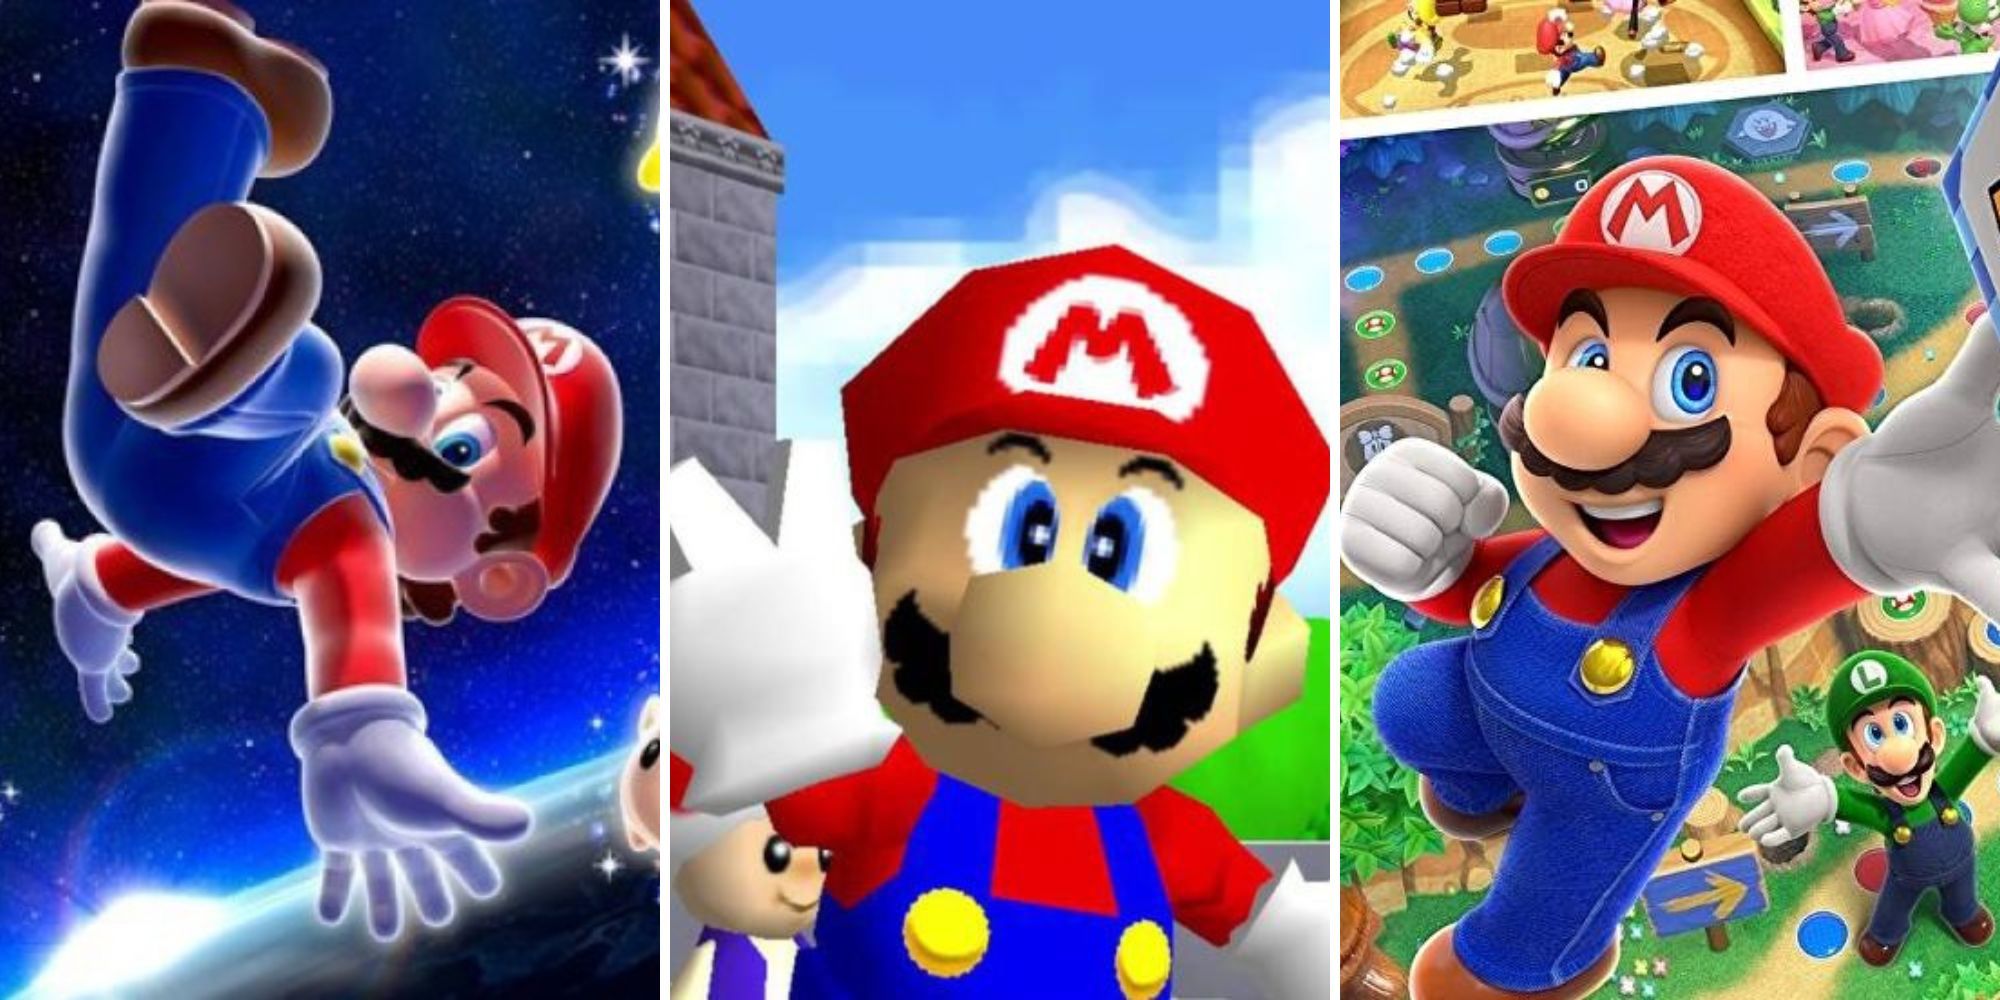 Mario in Super Mario Galaxy, Mario 64, and Mario Party Superstars